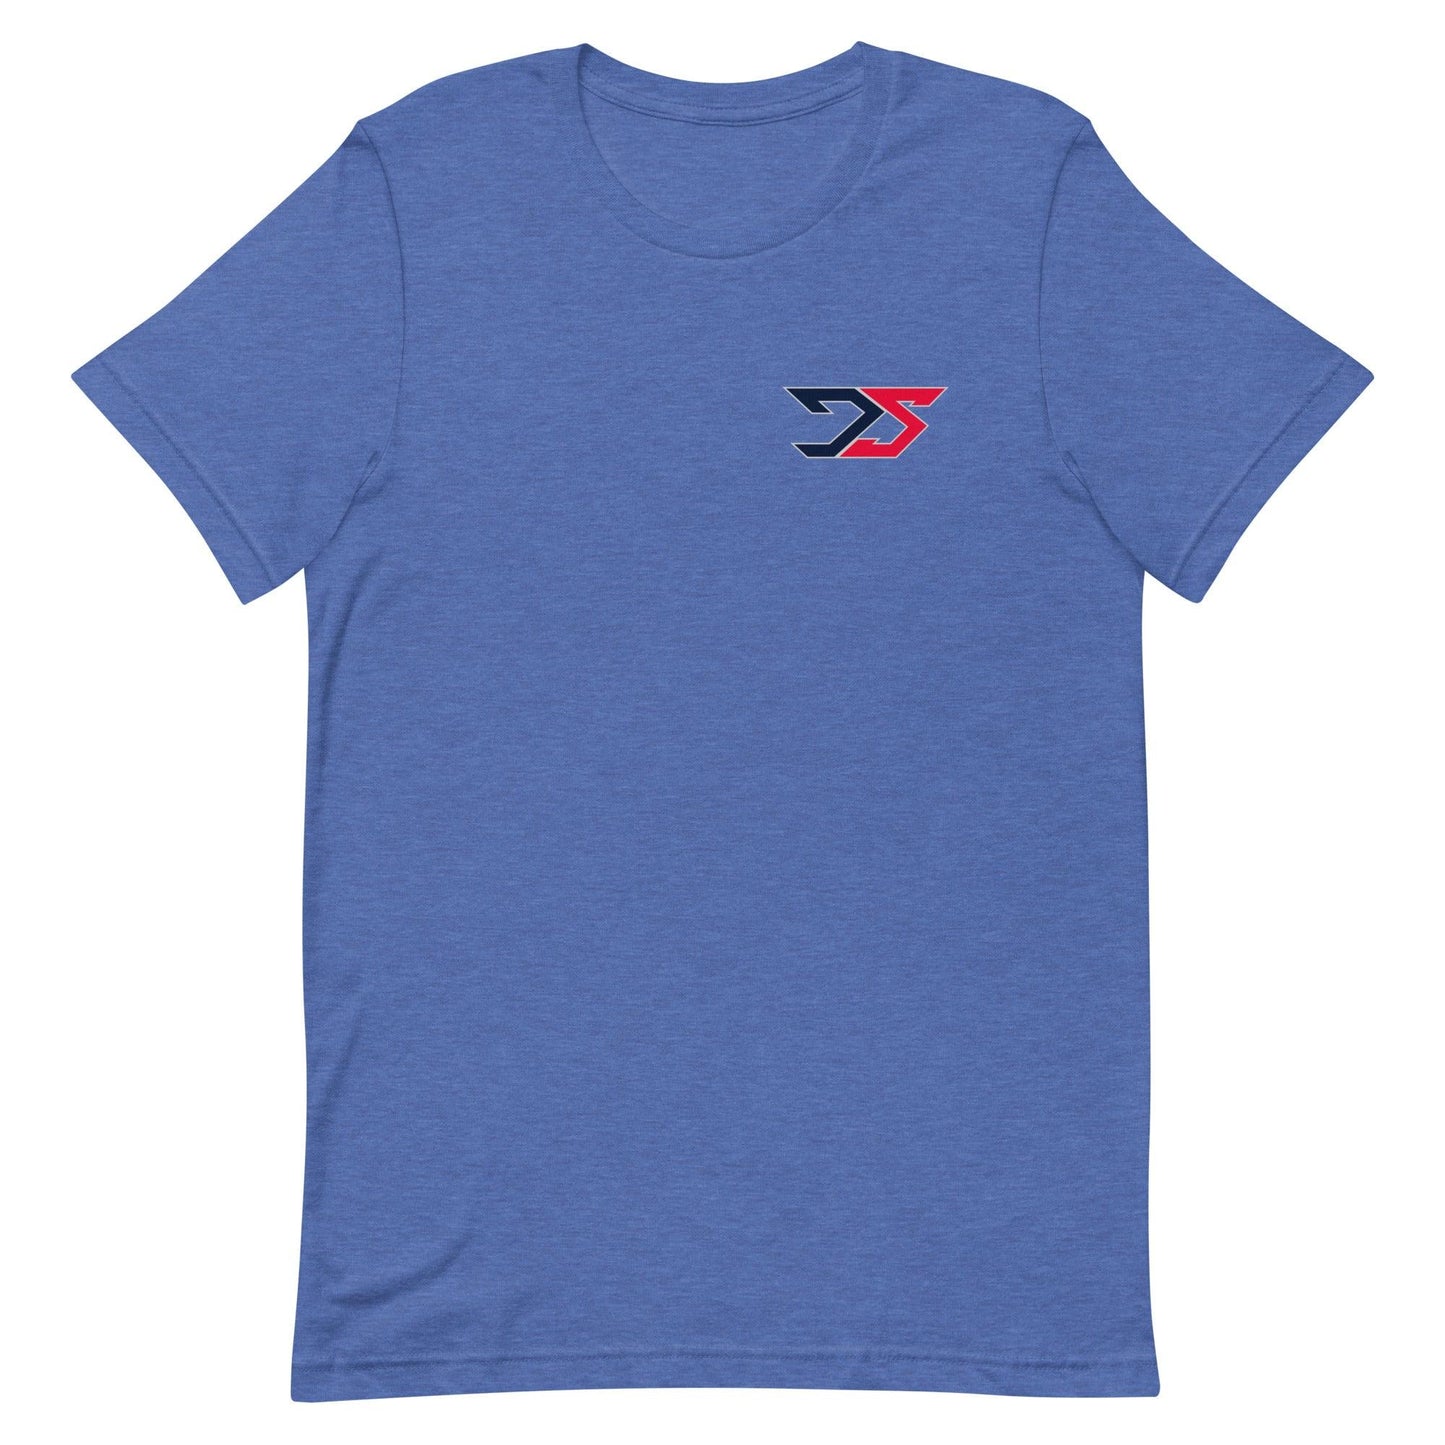 Dayne Shor "Essential" t-shirt - Fan Arch